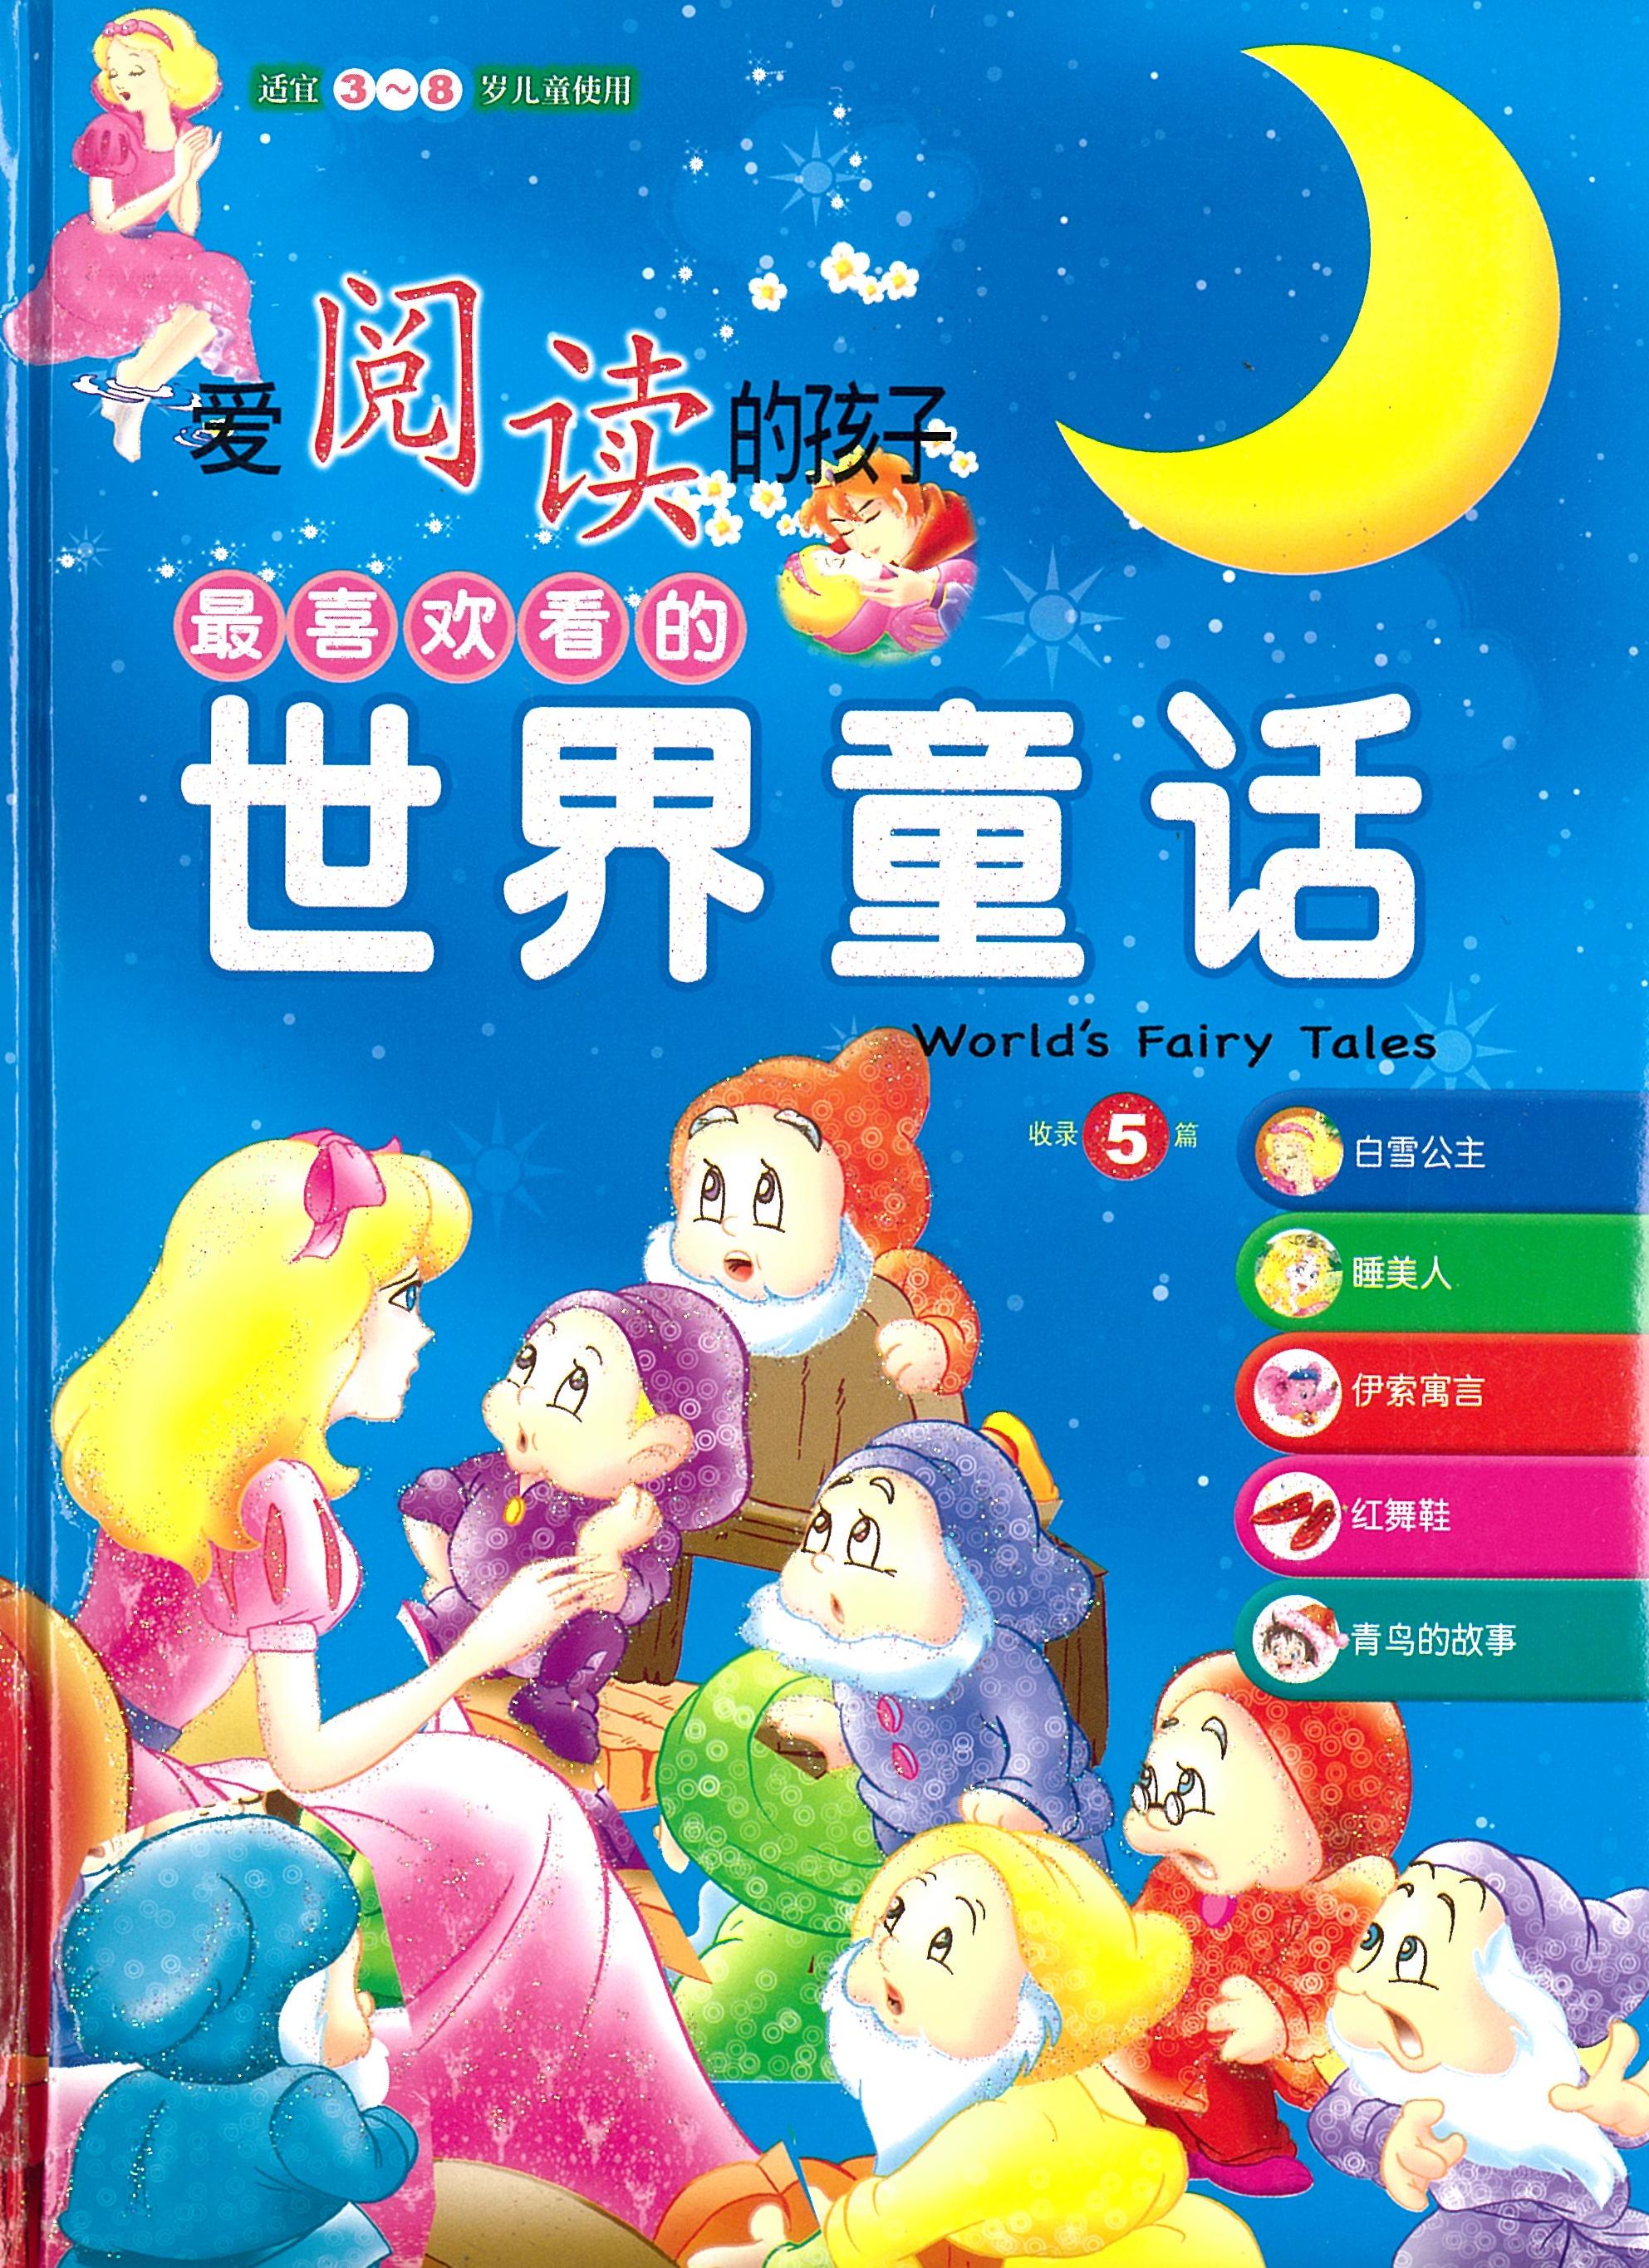 世界的童话-爱阅读的孩子 - _MS, CHIN BATCH 1, 绘本/故事书